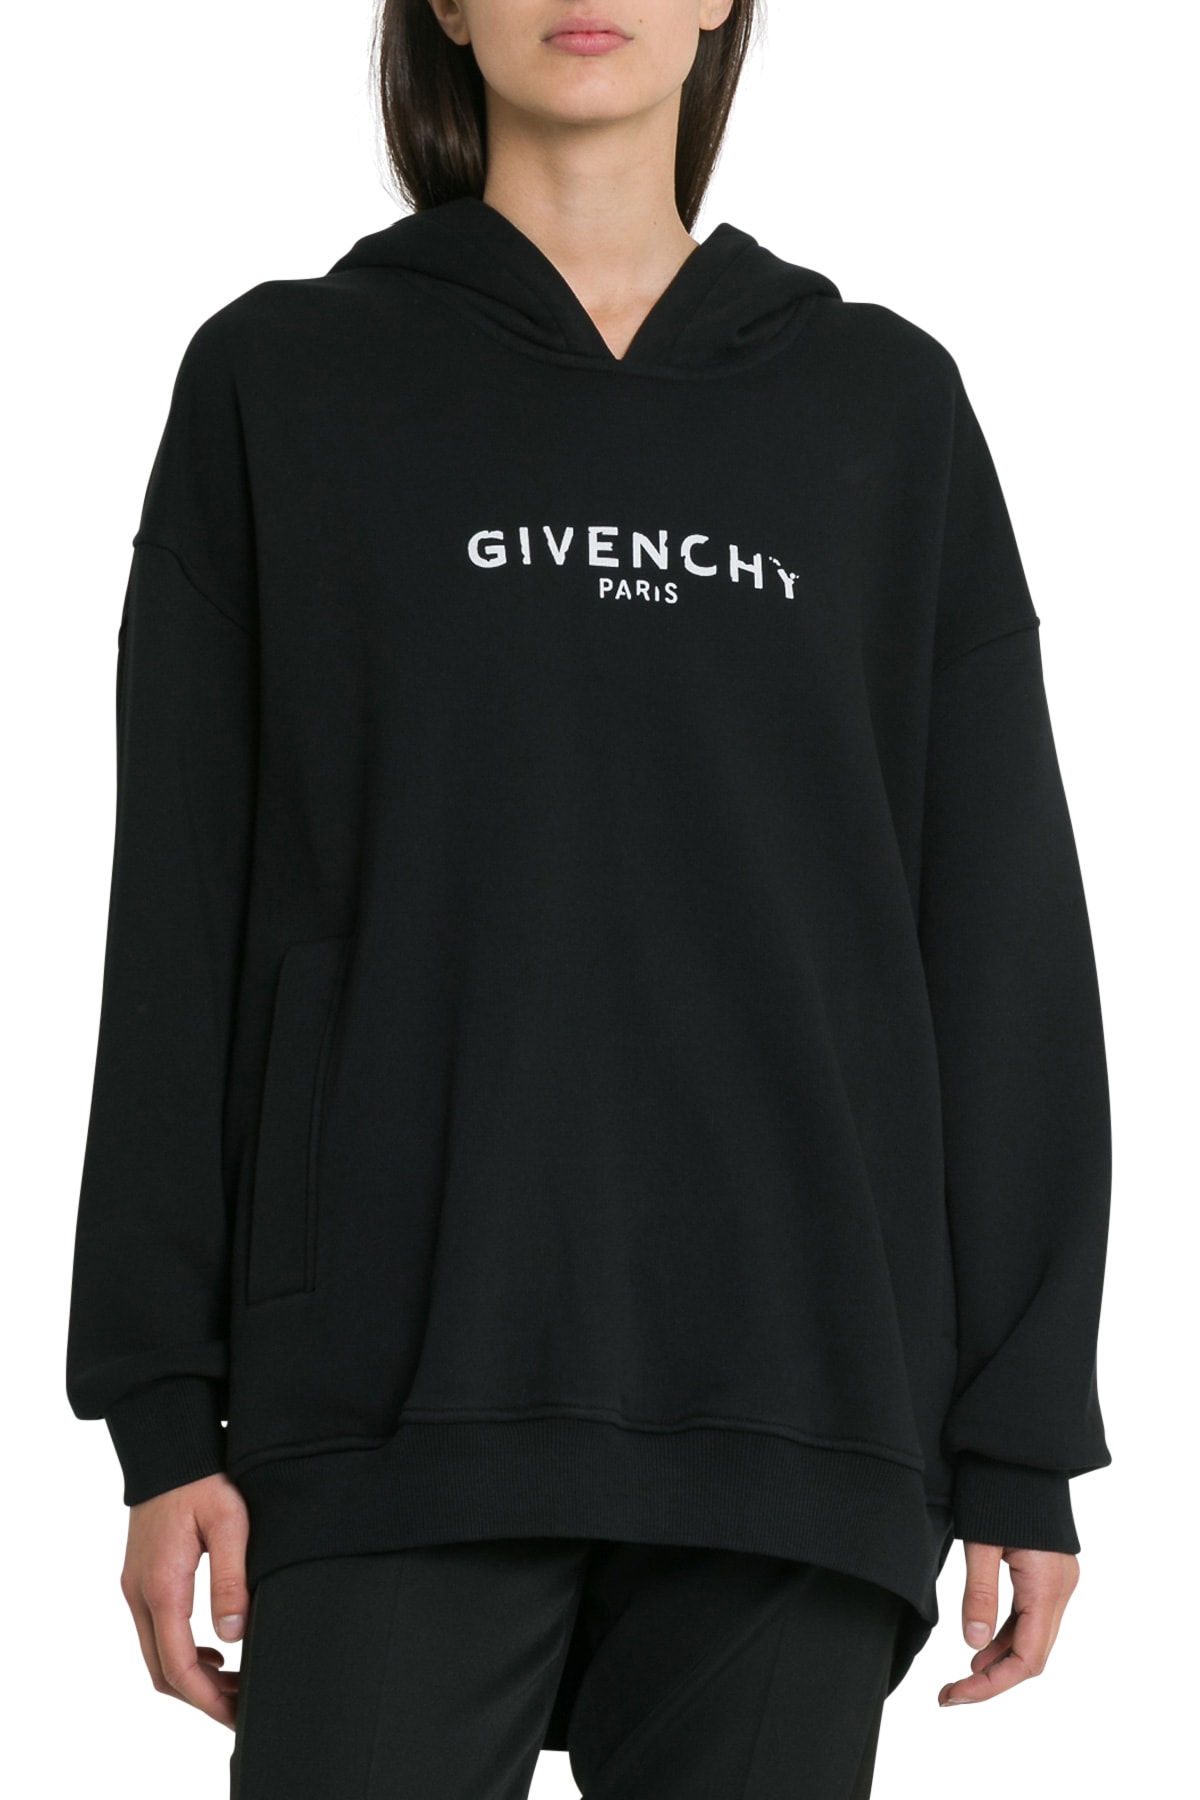 buy \u003e oversized givenchy hoodie \u003e Up to 